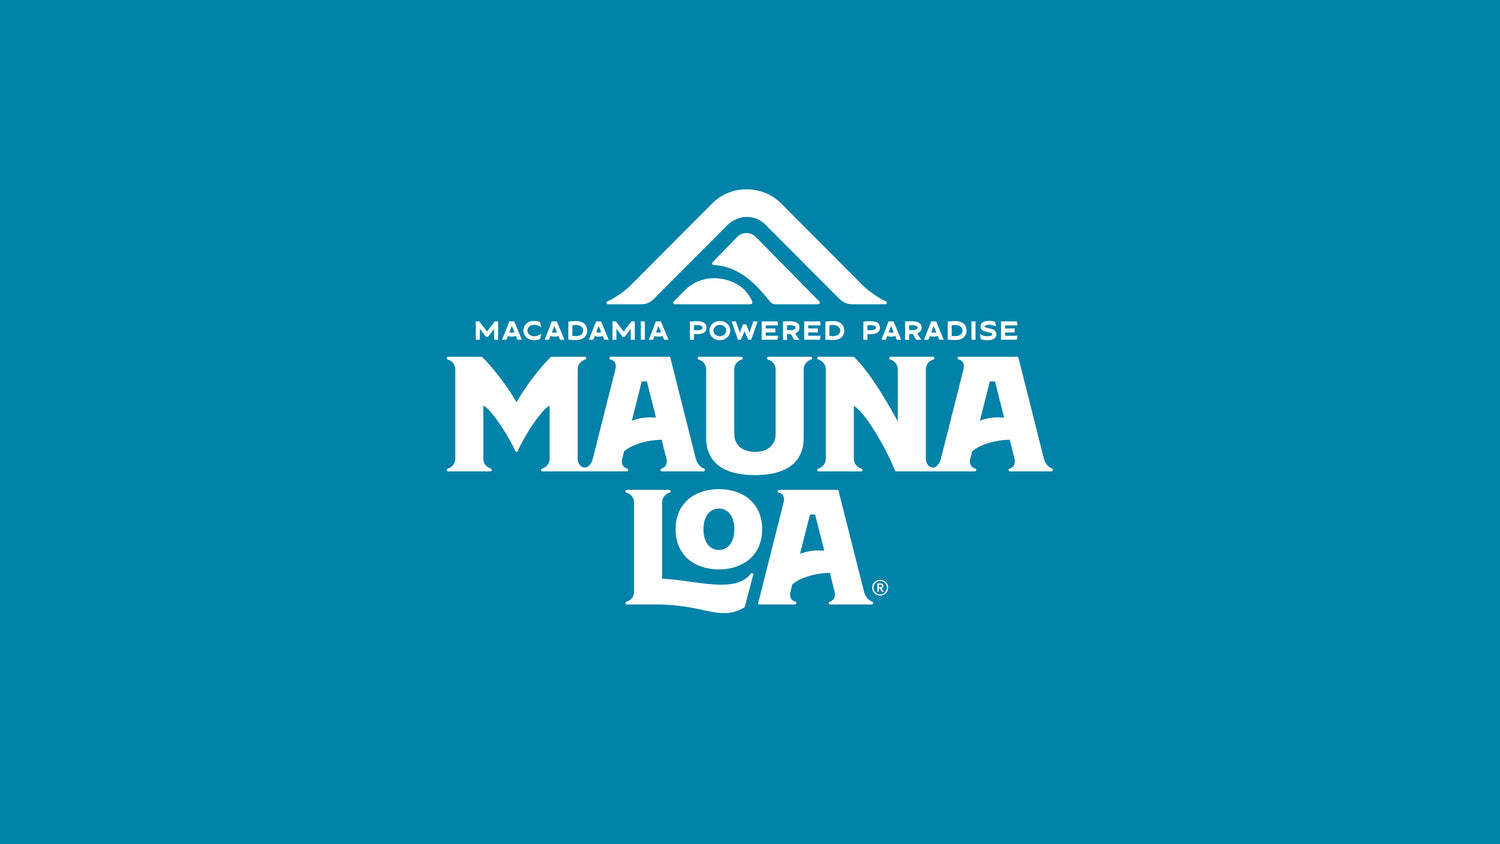 Mauna Loa Macadamia Nuts